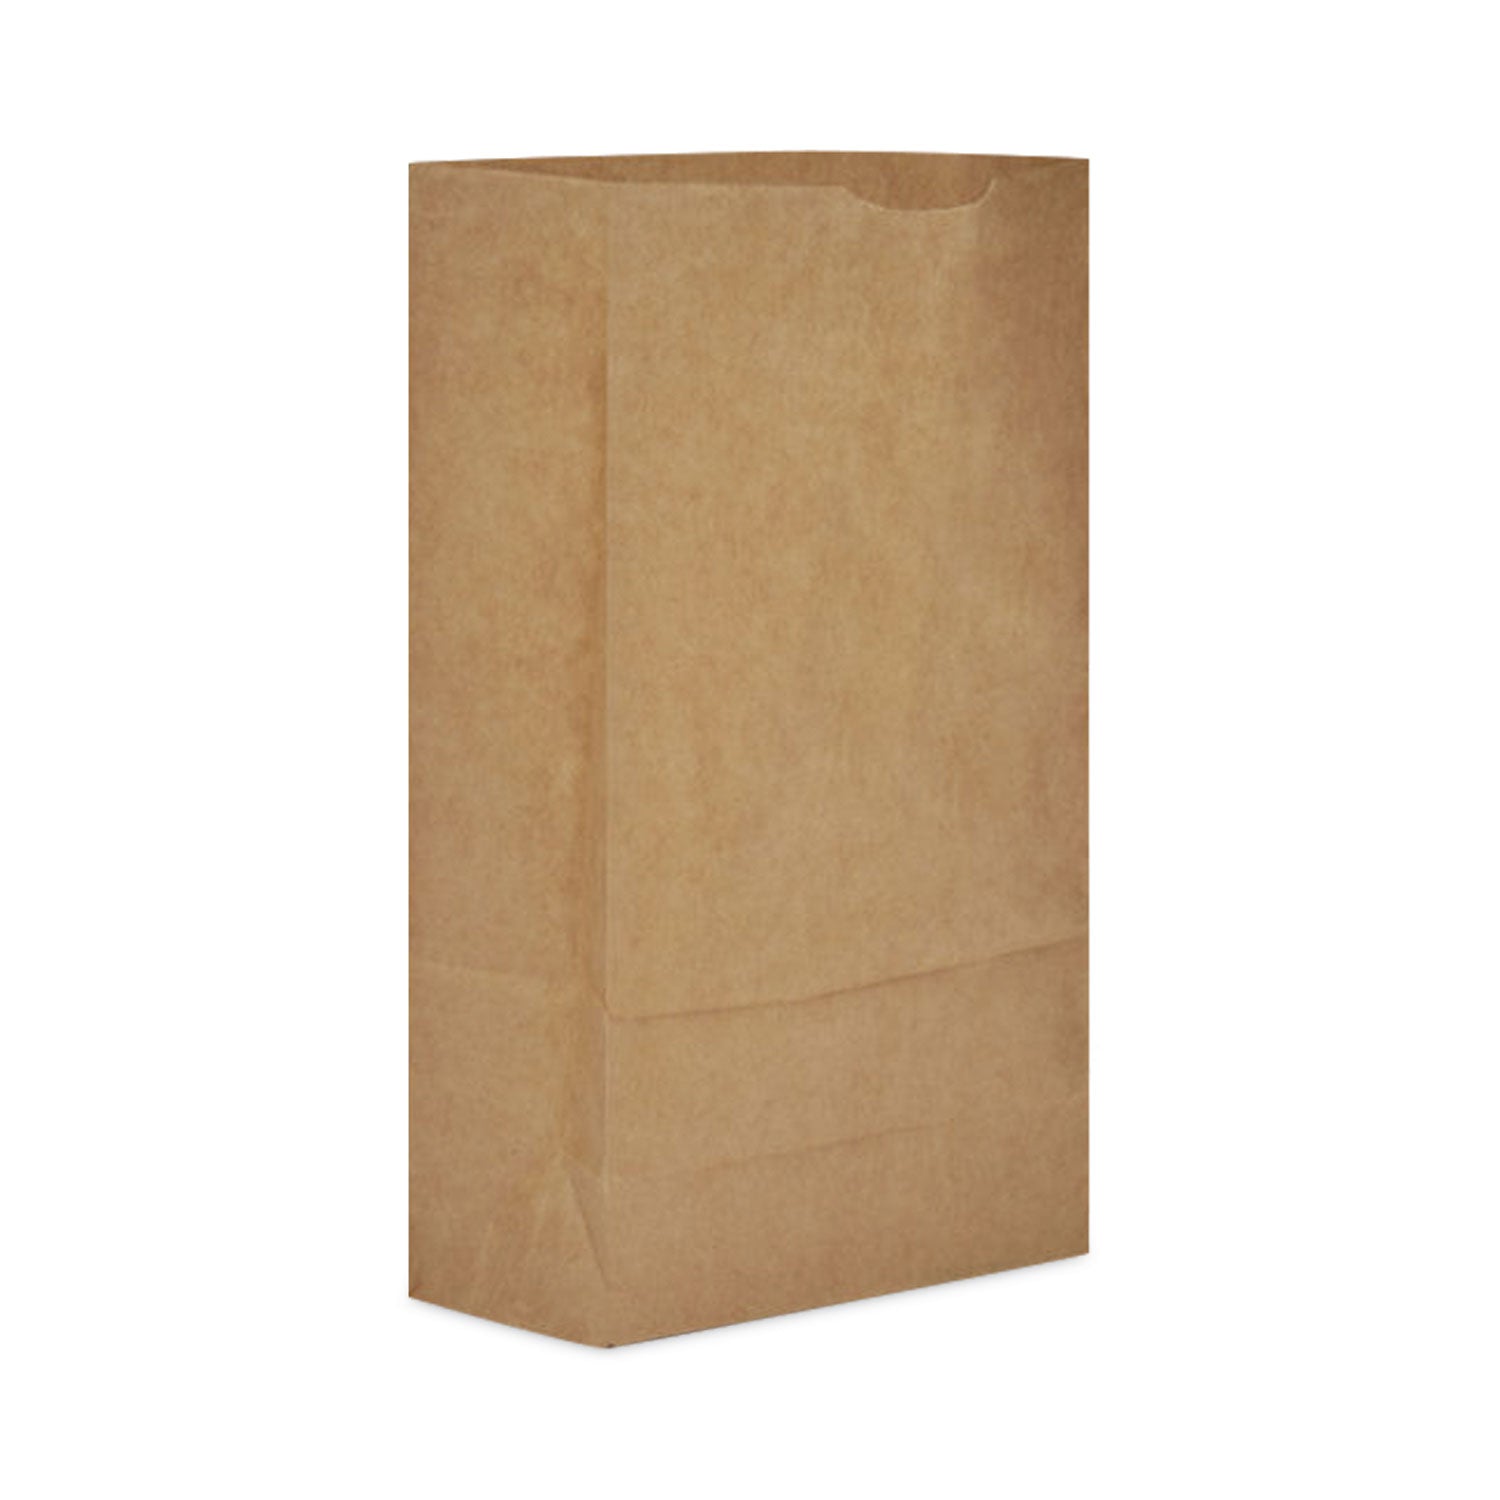 Brown Paper Grocery Bags 9.25 x 24.75, Brown, 1,000/Bundle